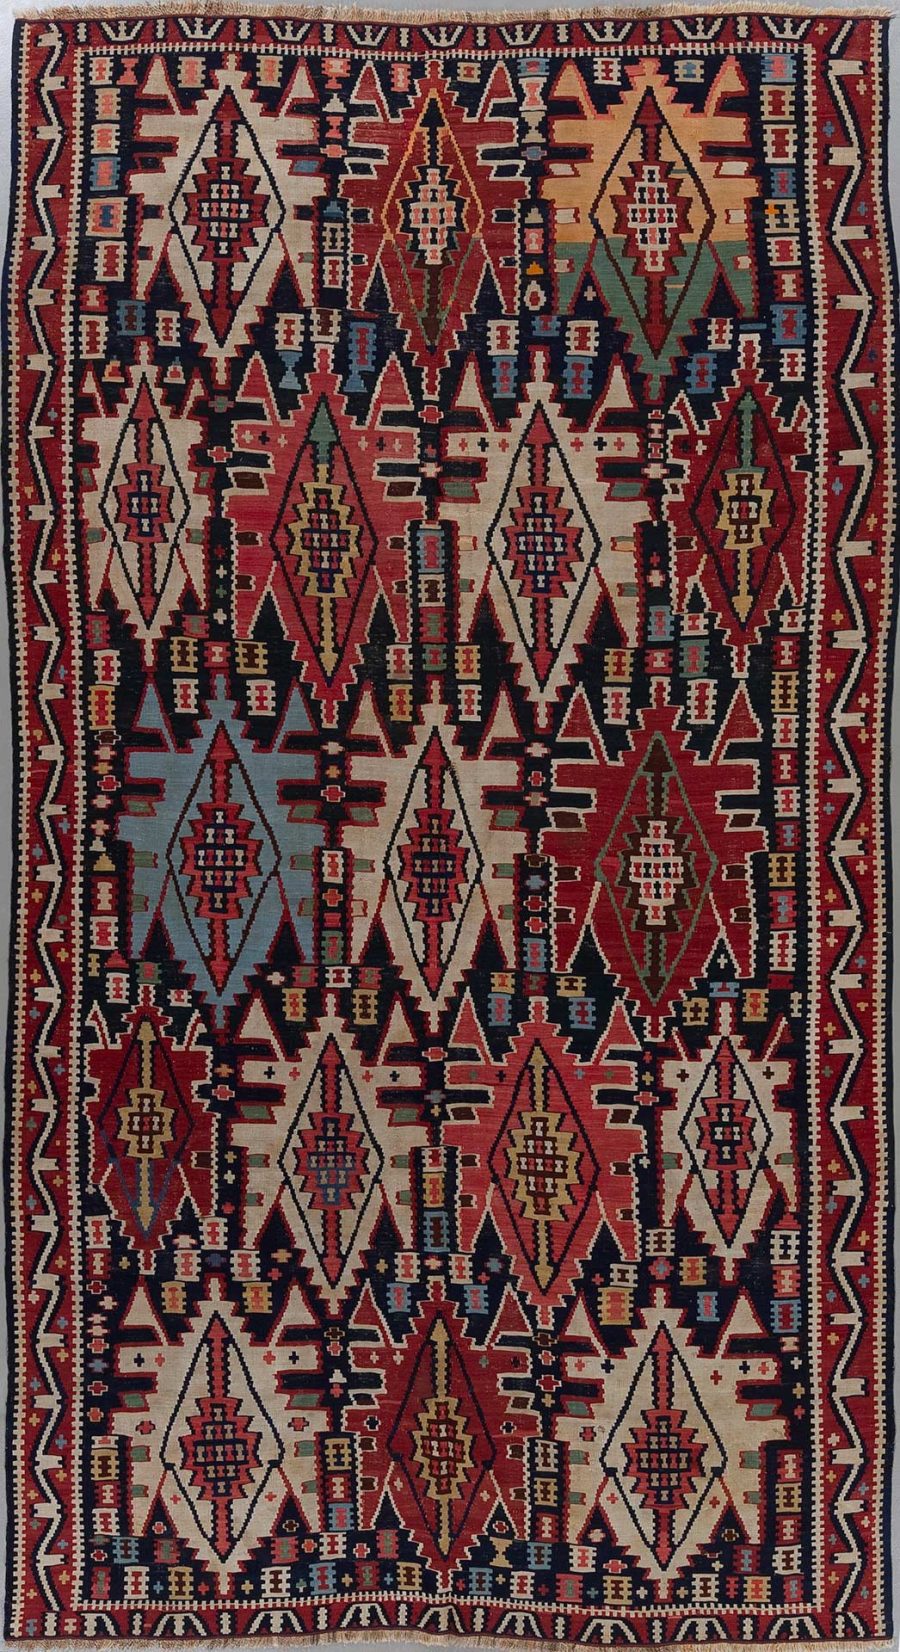 Ein handgewebter Teppich mit einem komplexen, symmetrischen Muster aus Diamanten und geometrischen Formen in Rot, Blau, Beige und Schwarztönen.